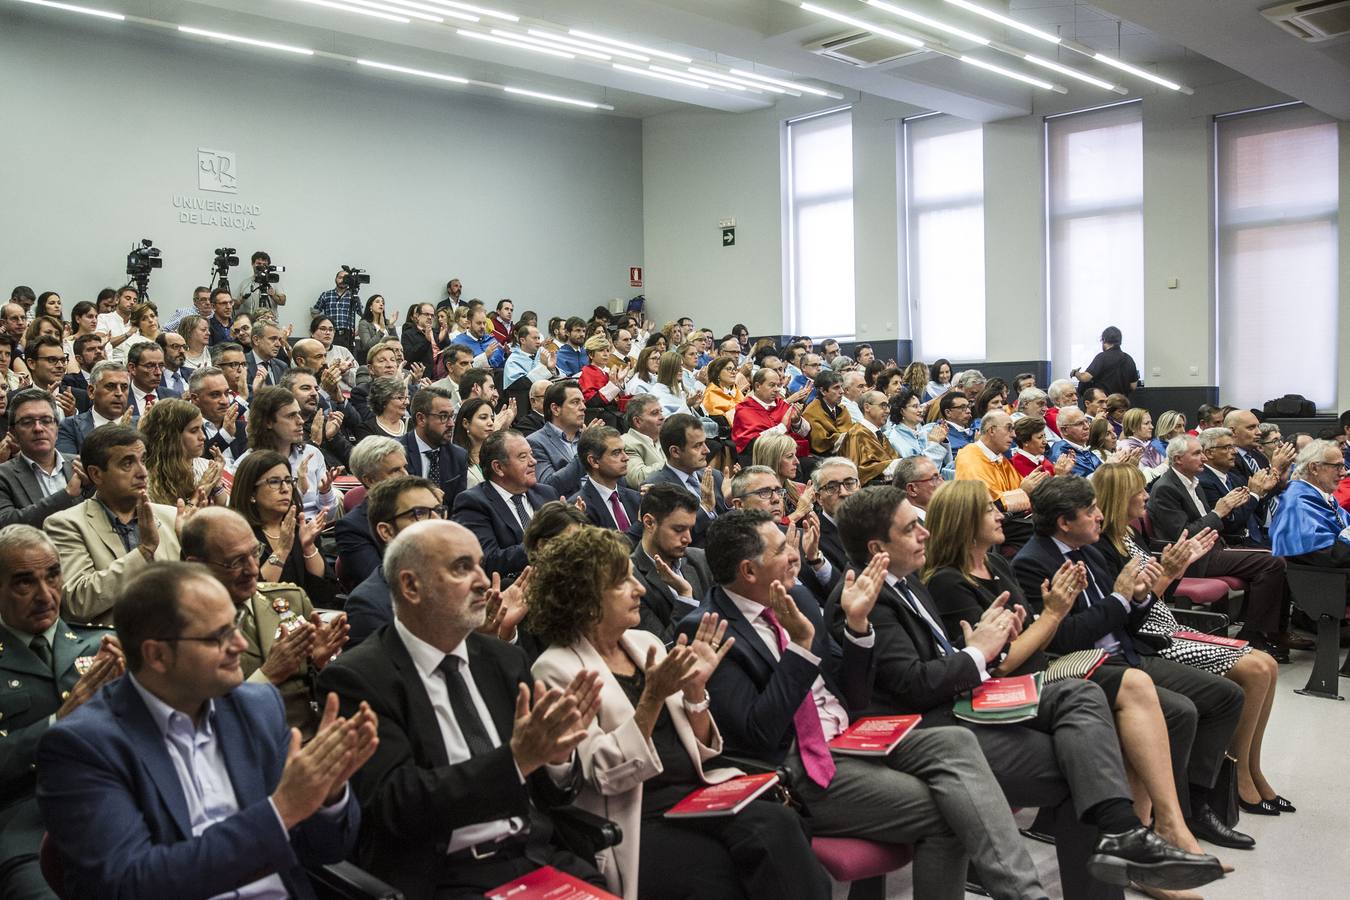 El rector de la Universidad de La Rioja (UR), Julio Rubio, ha inaugurado este lunes de forma oficial el curso 2018-2019 aunque está a dos días de someterse a una cuestión de confianza en el claustro, que podría determinar su salida de este puesto.